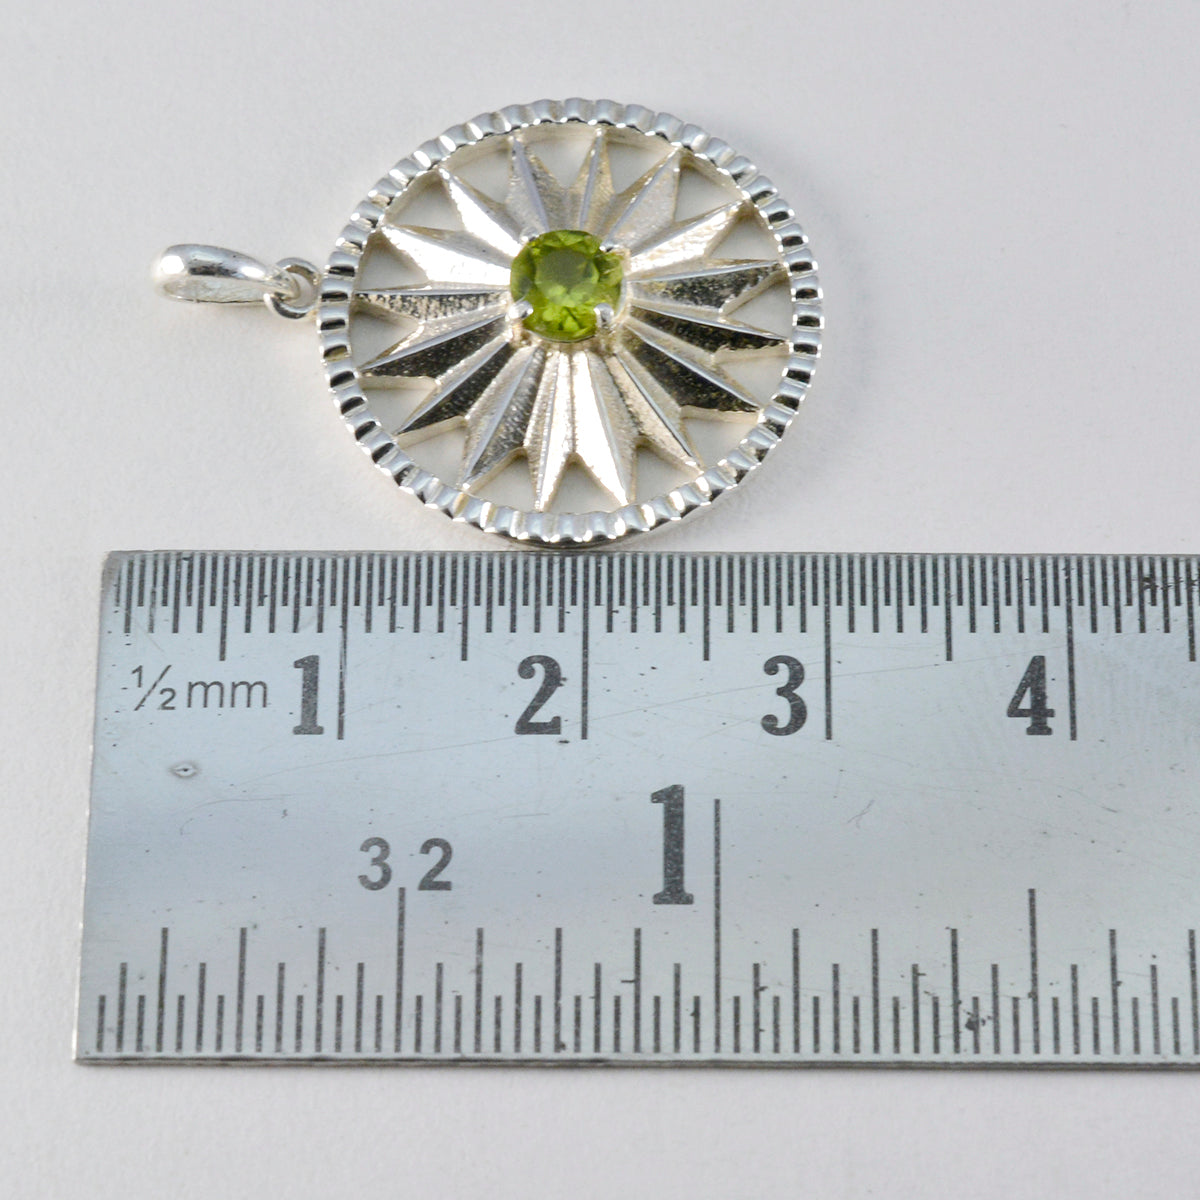 Riyo mooie edelsteen ronde gefacetteerde groene peridot 984 sterling zilveren hanger cadeau voor vriendin